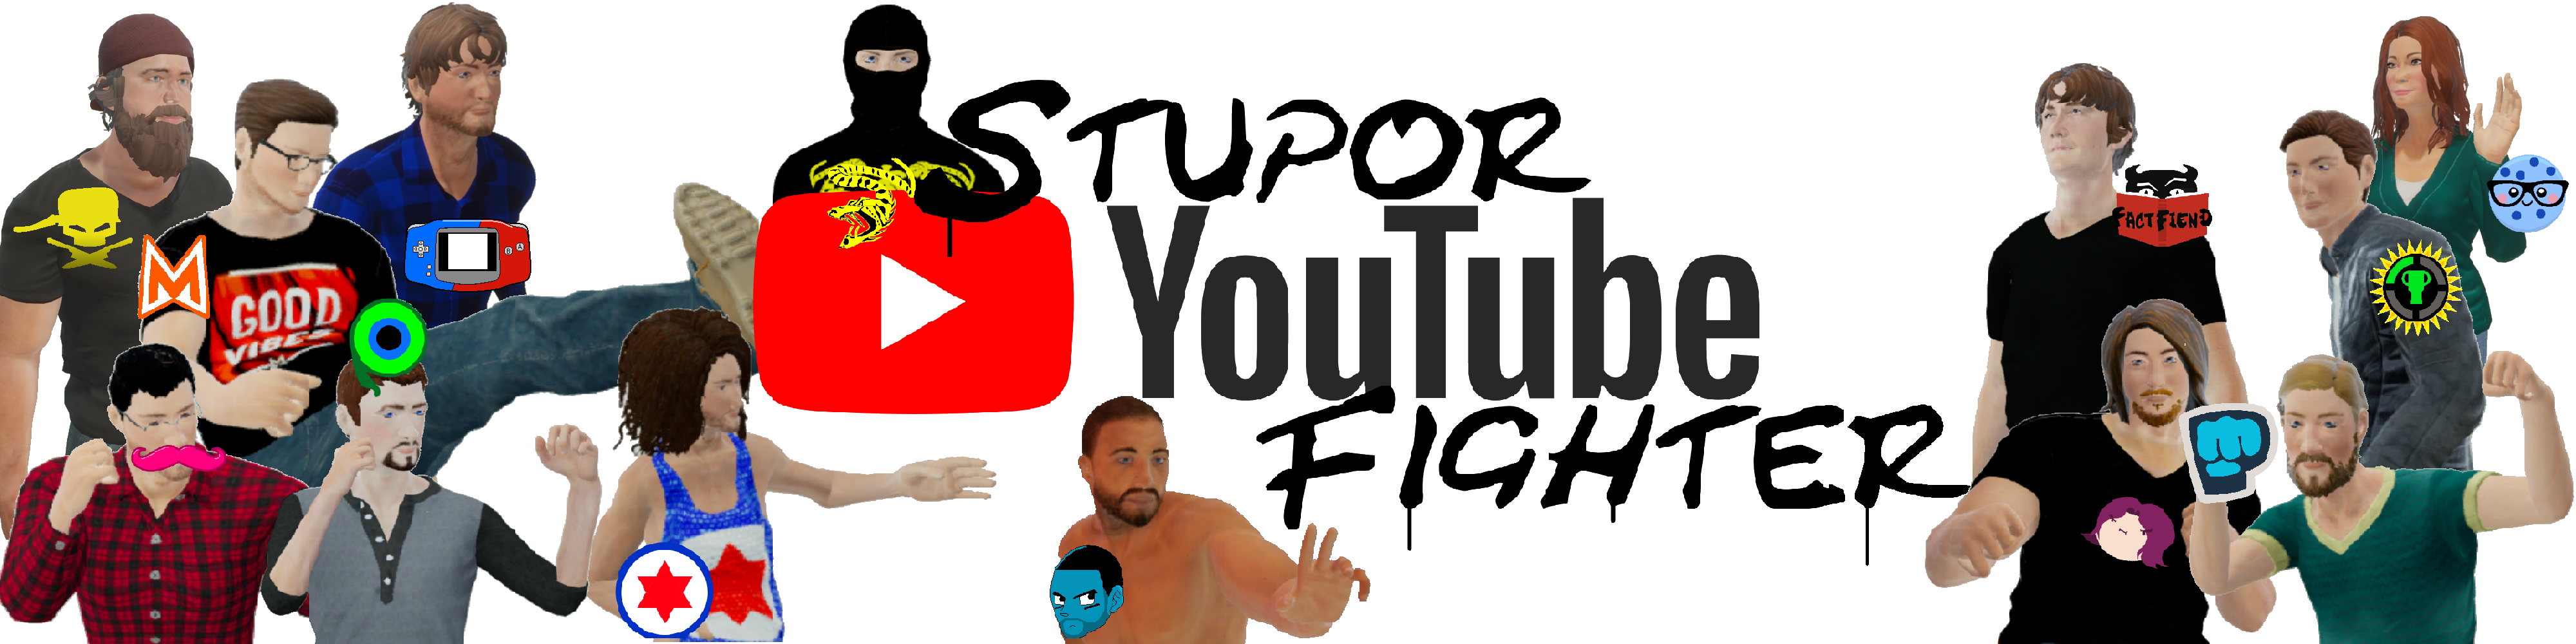 Stupor youtube Fighter